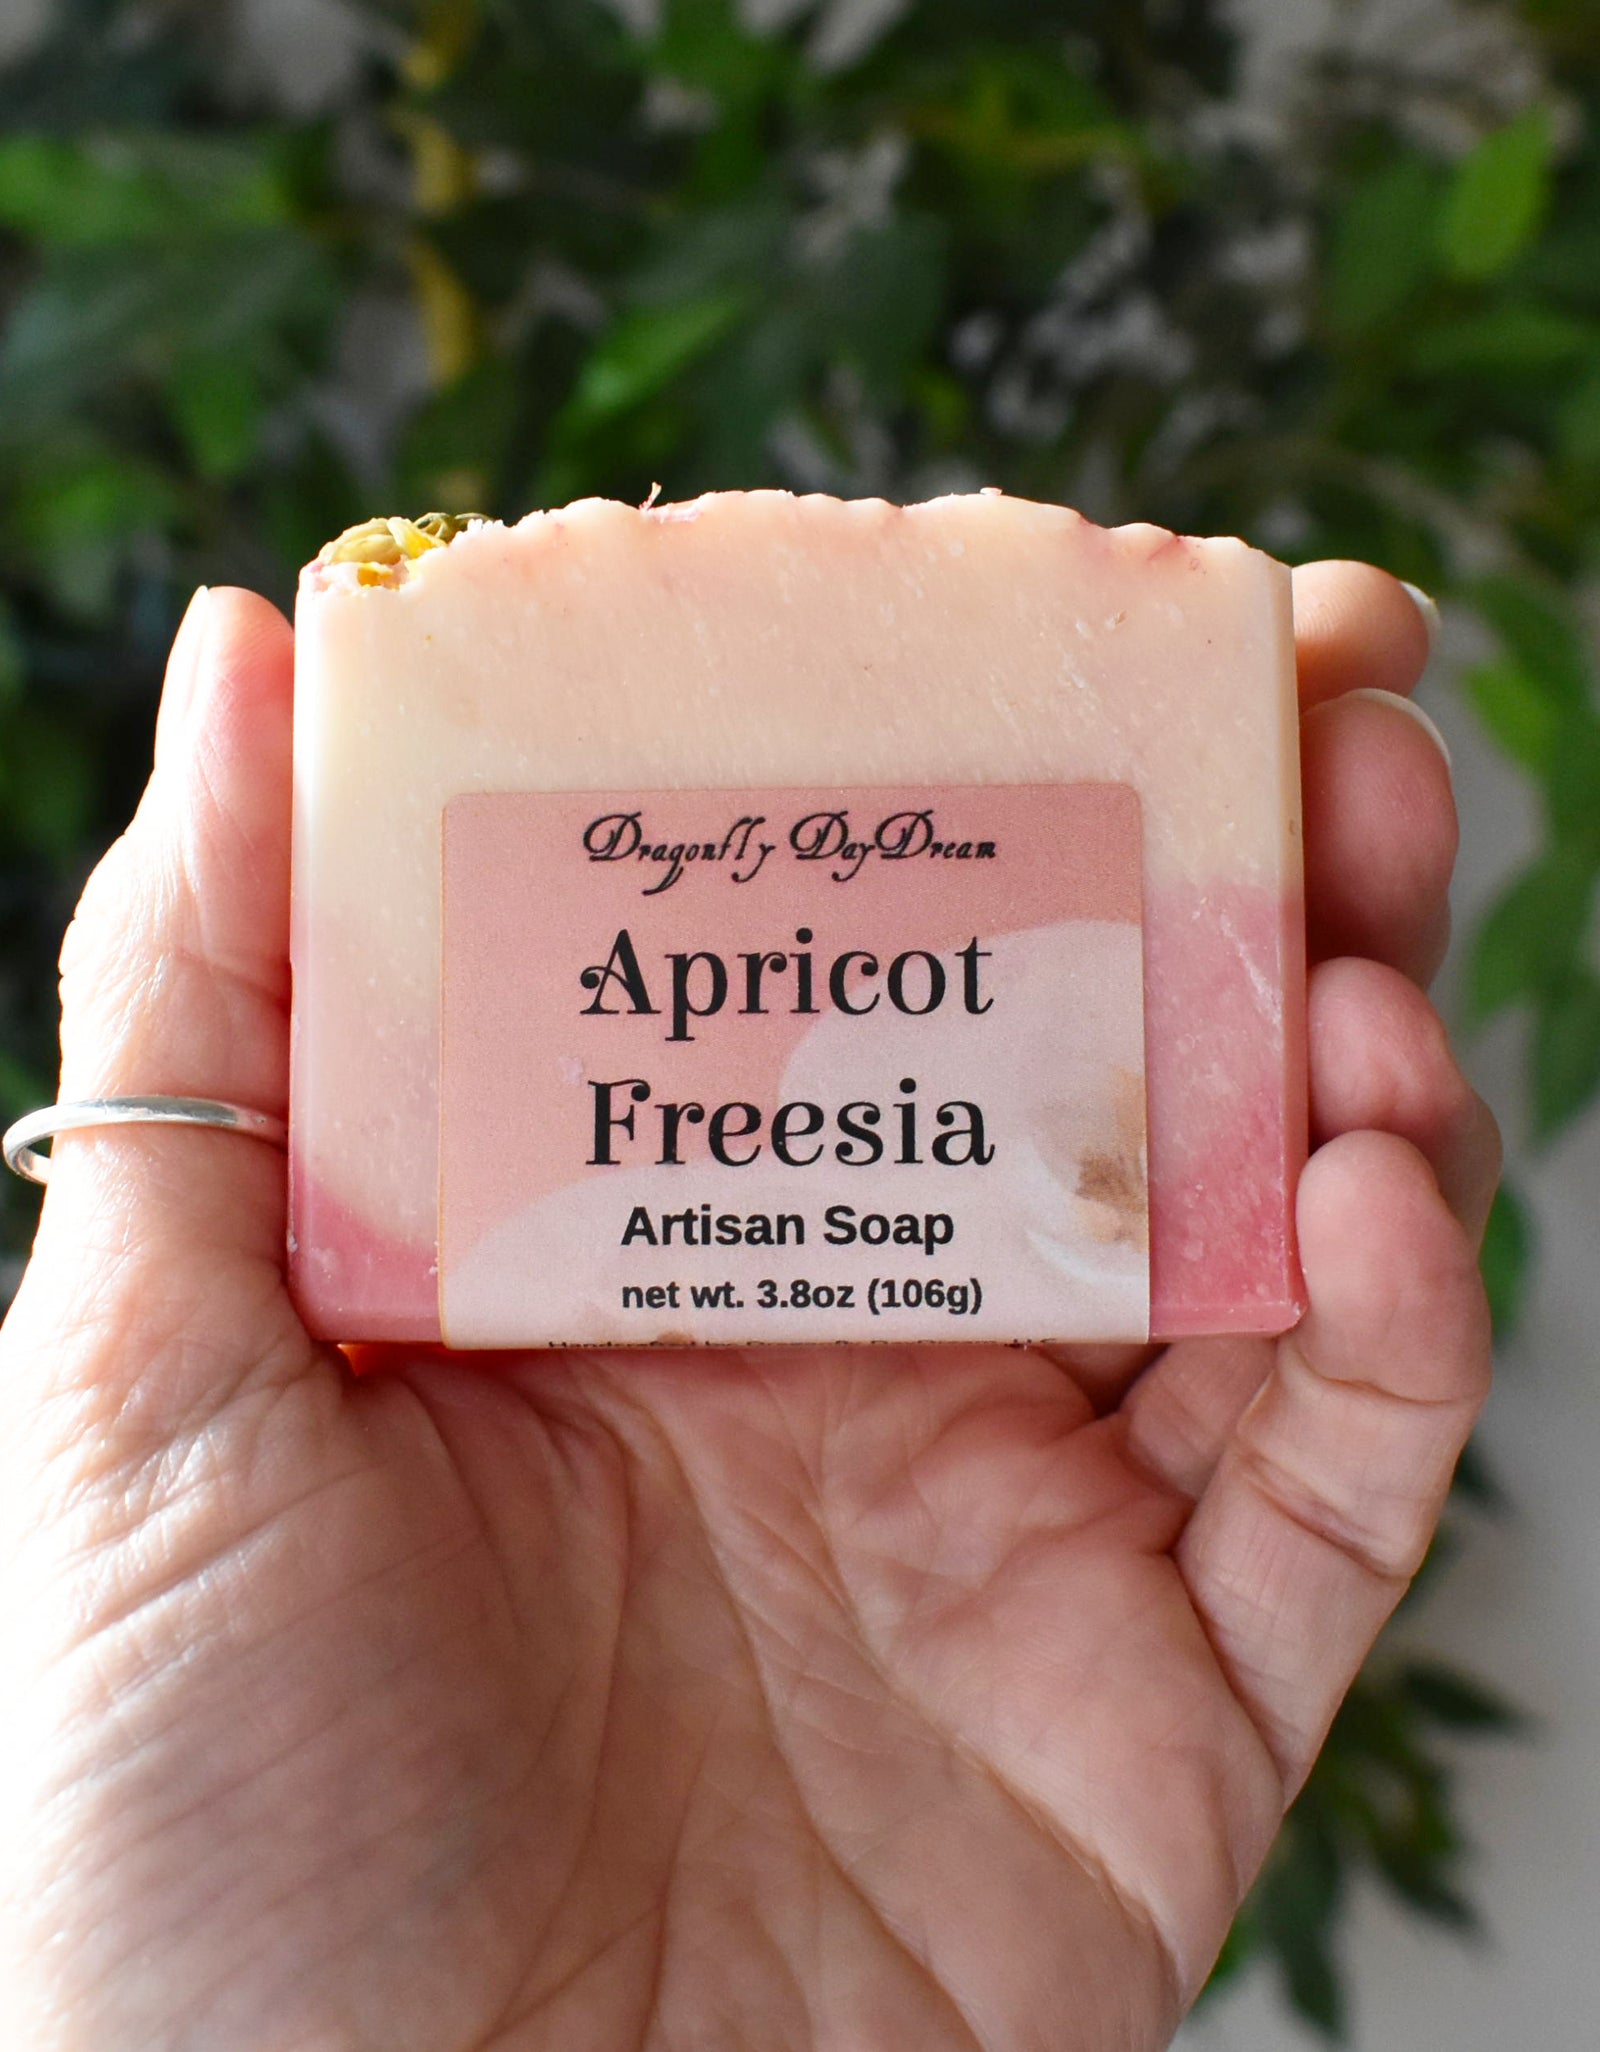 Apricot Freesia Artisan Soap